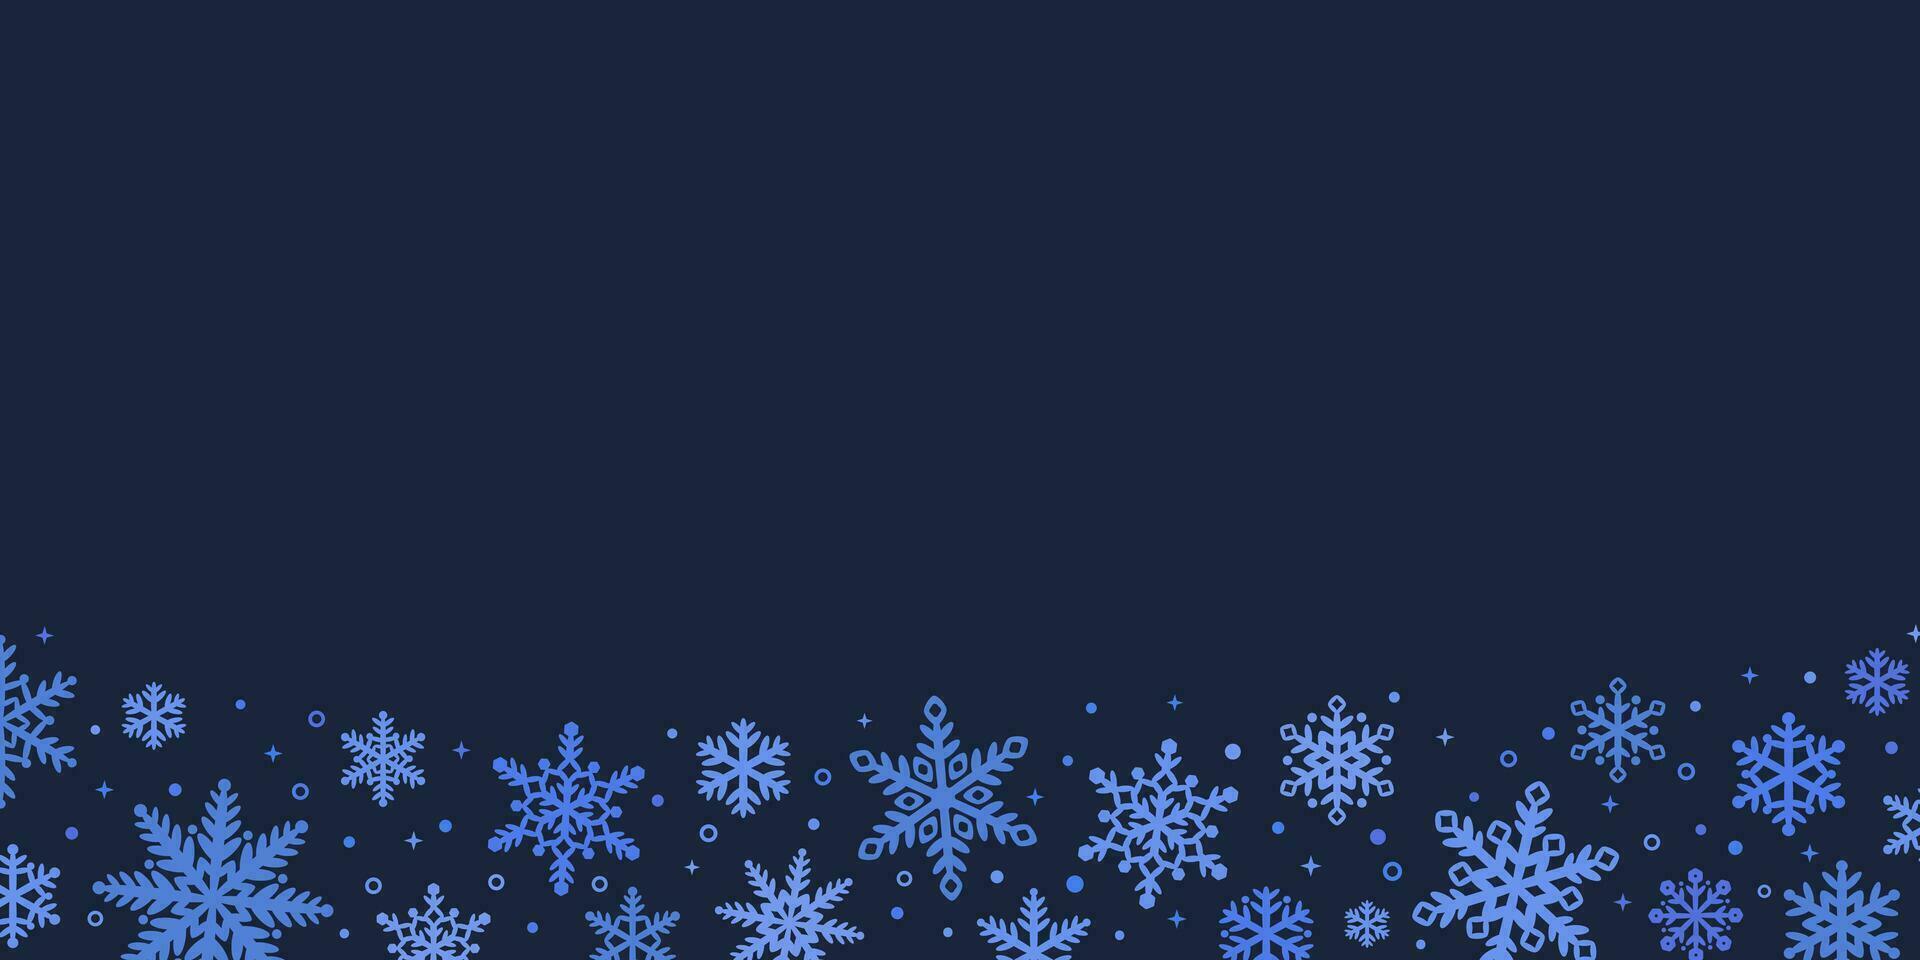 dunkel Blau Winter Urlaub Vektor Rand backgorund mit Sterne und Schneeflocken, elegant Weihnachten Hintergrund Design